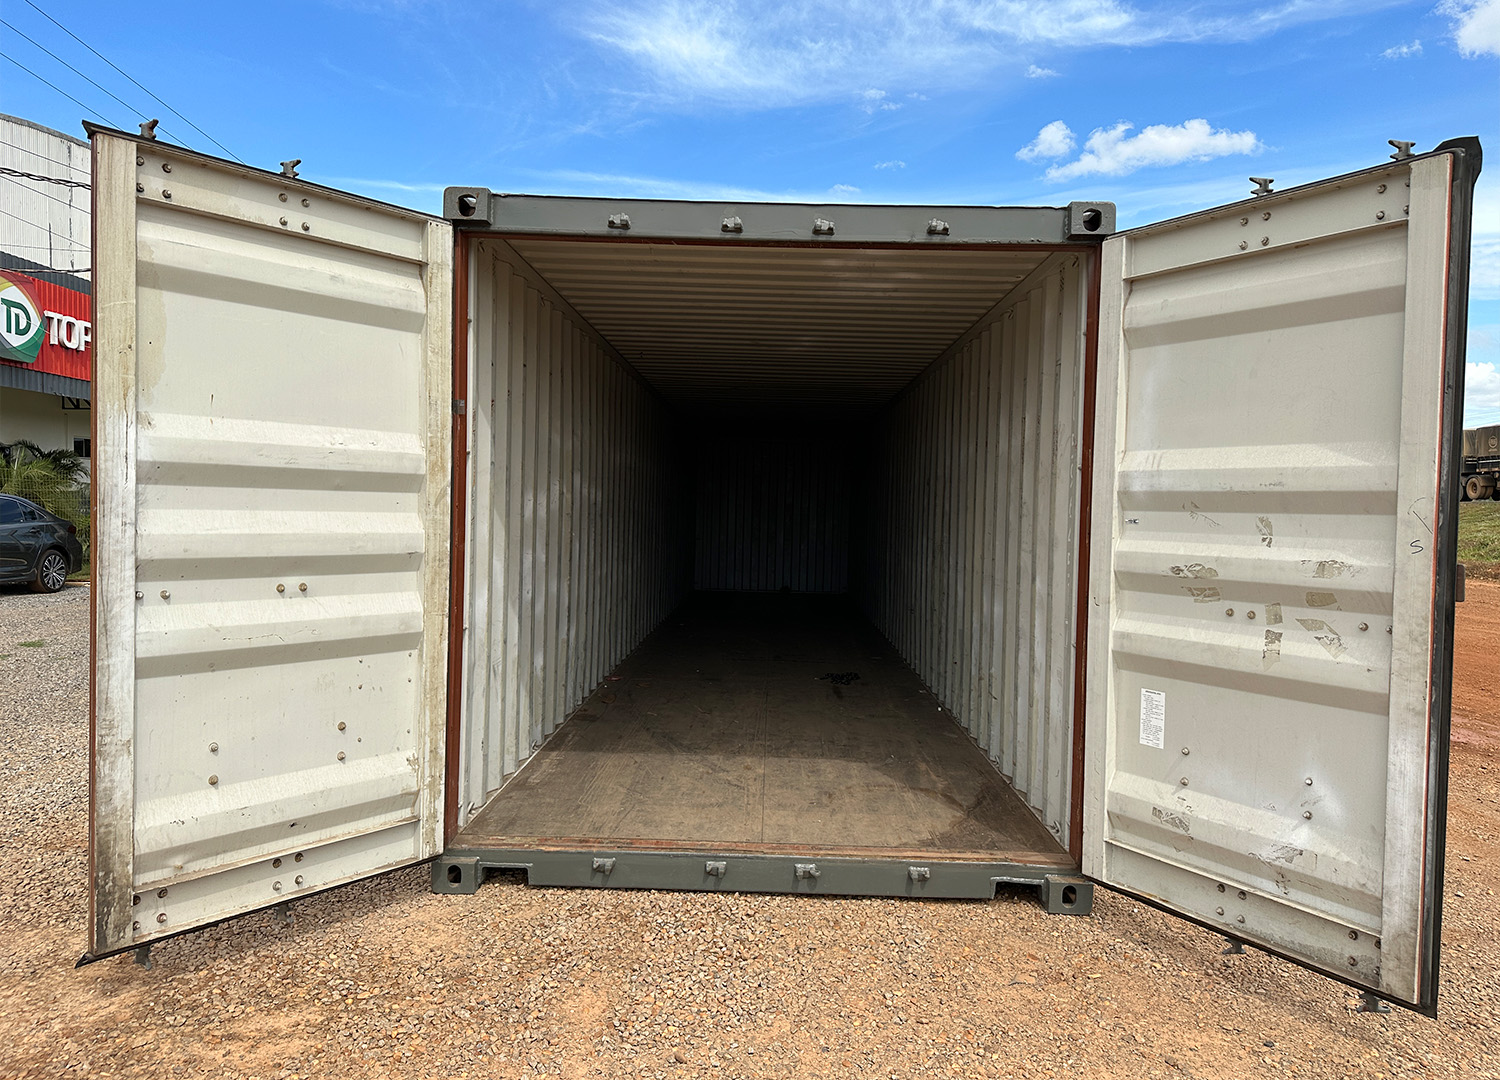 Container 40Pés Standard Dry Cargo (12 Metros) com 2,60m Altura - LOCAÇÃO